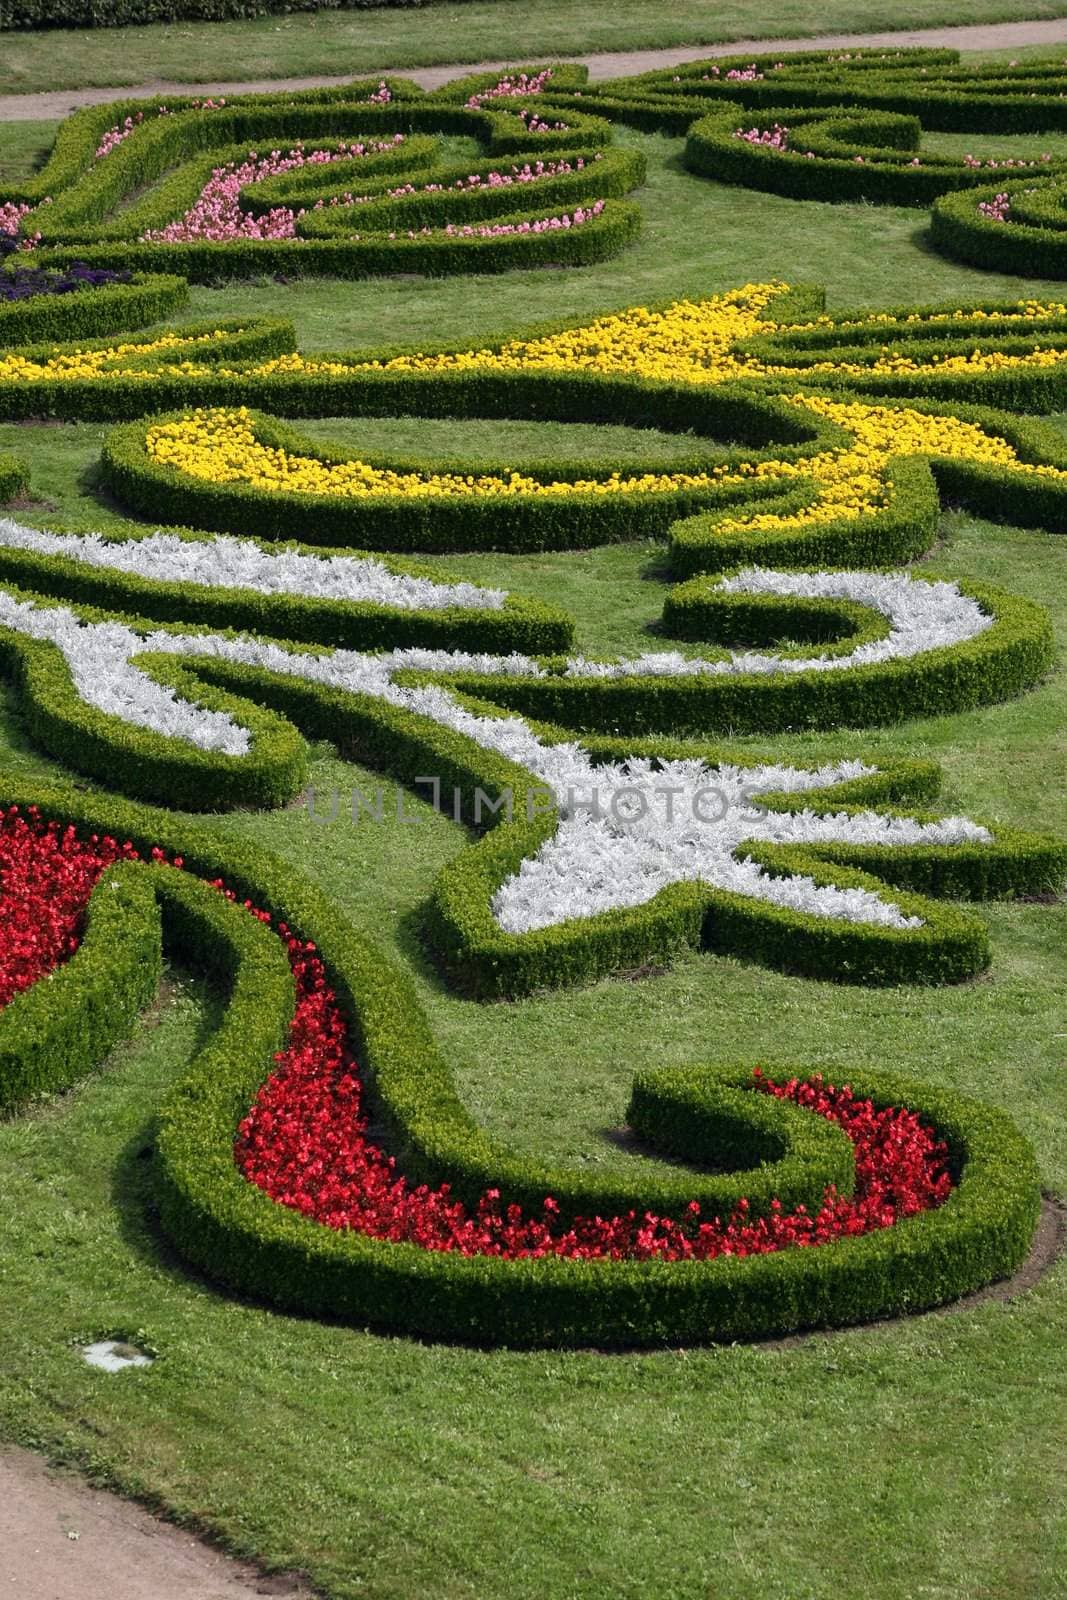 Flower garden of Castle in Kromeriz, Czech Republic